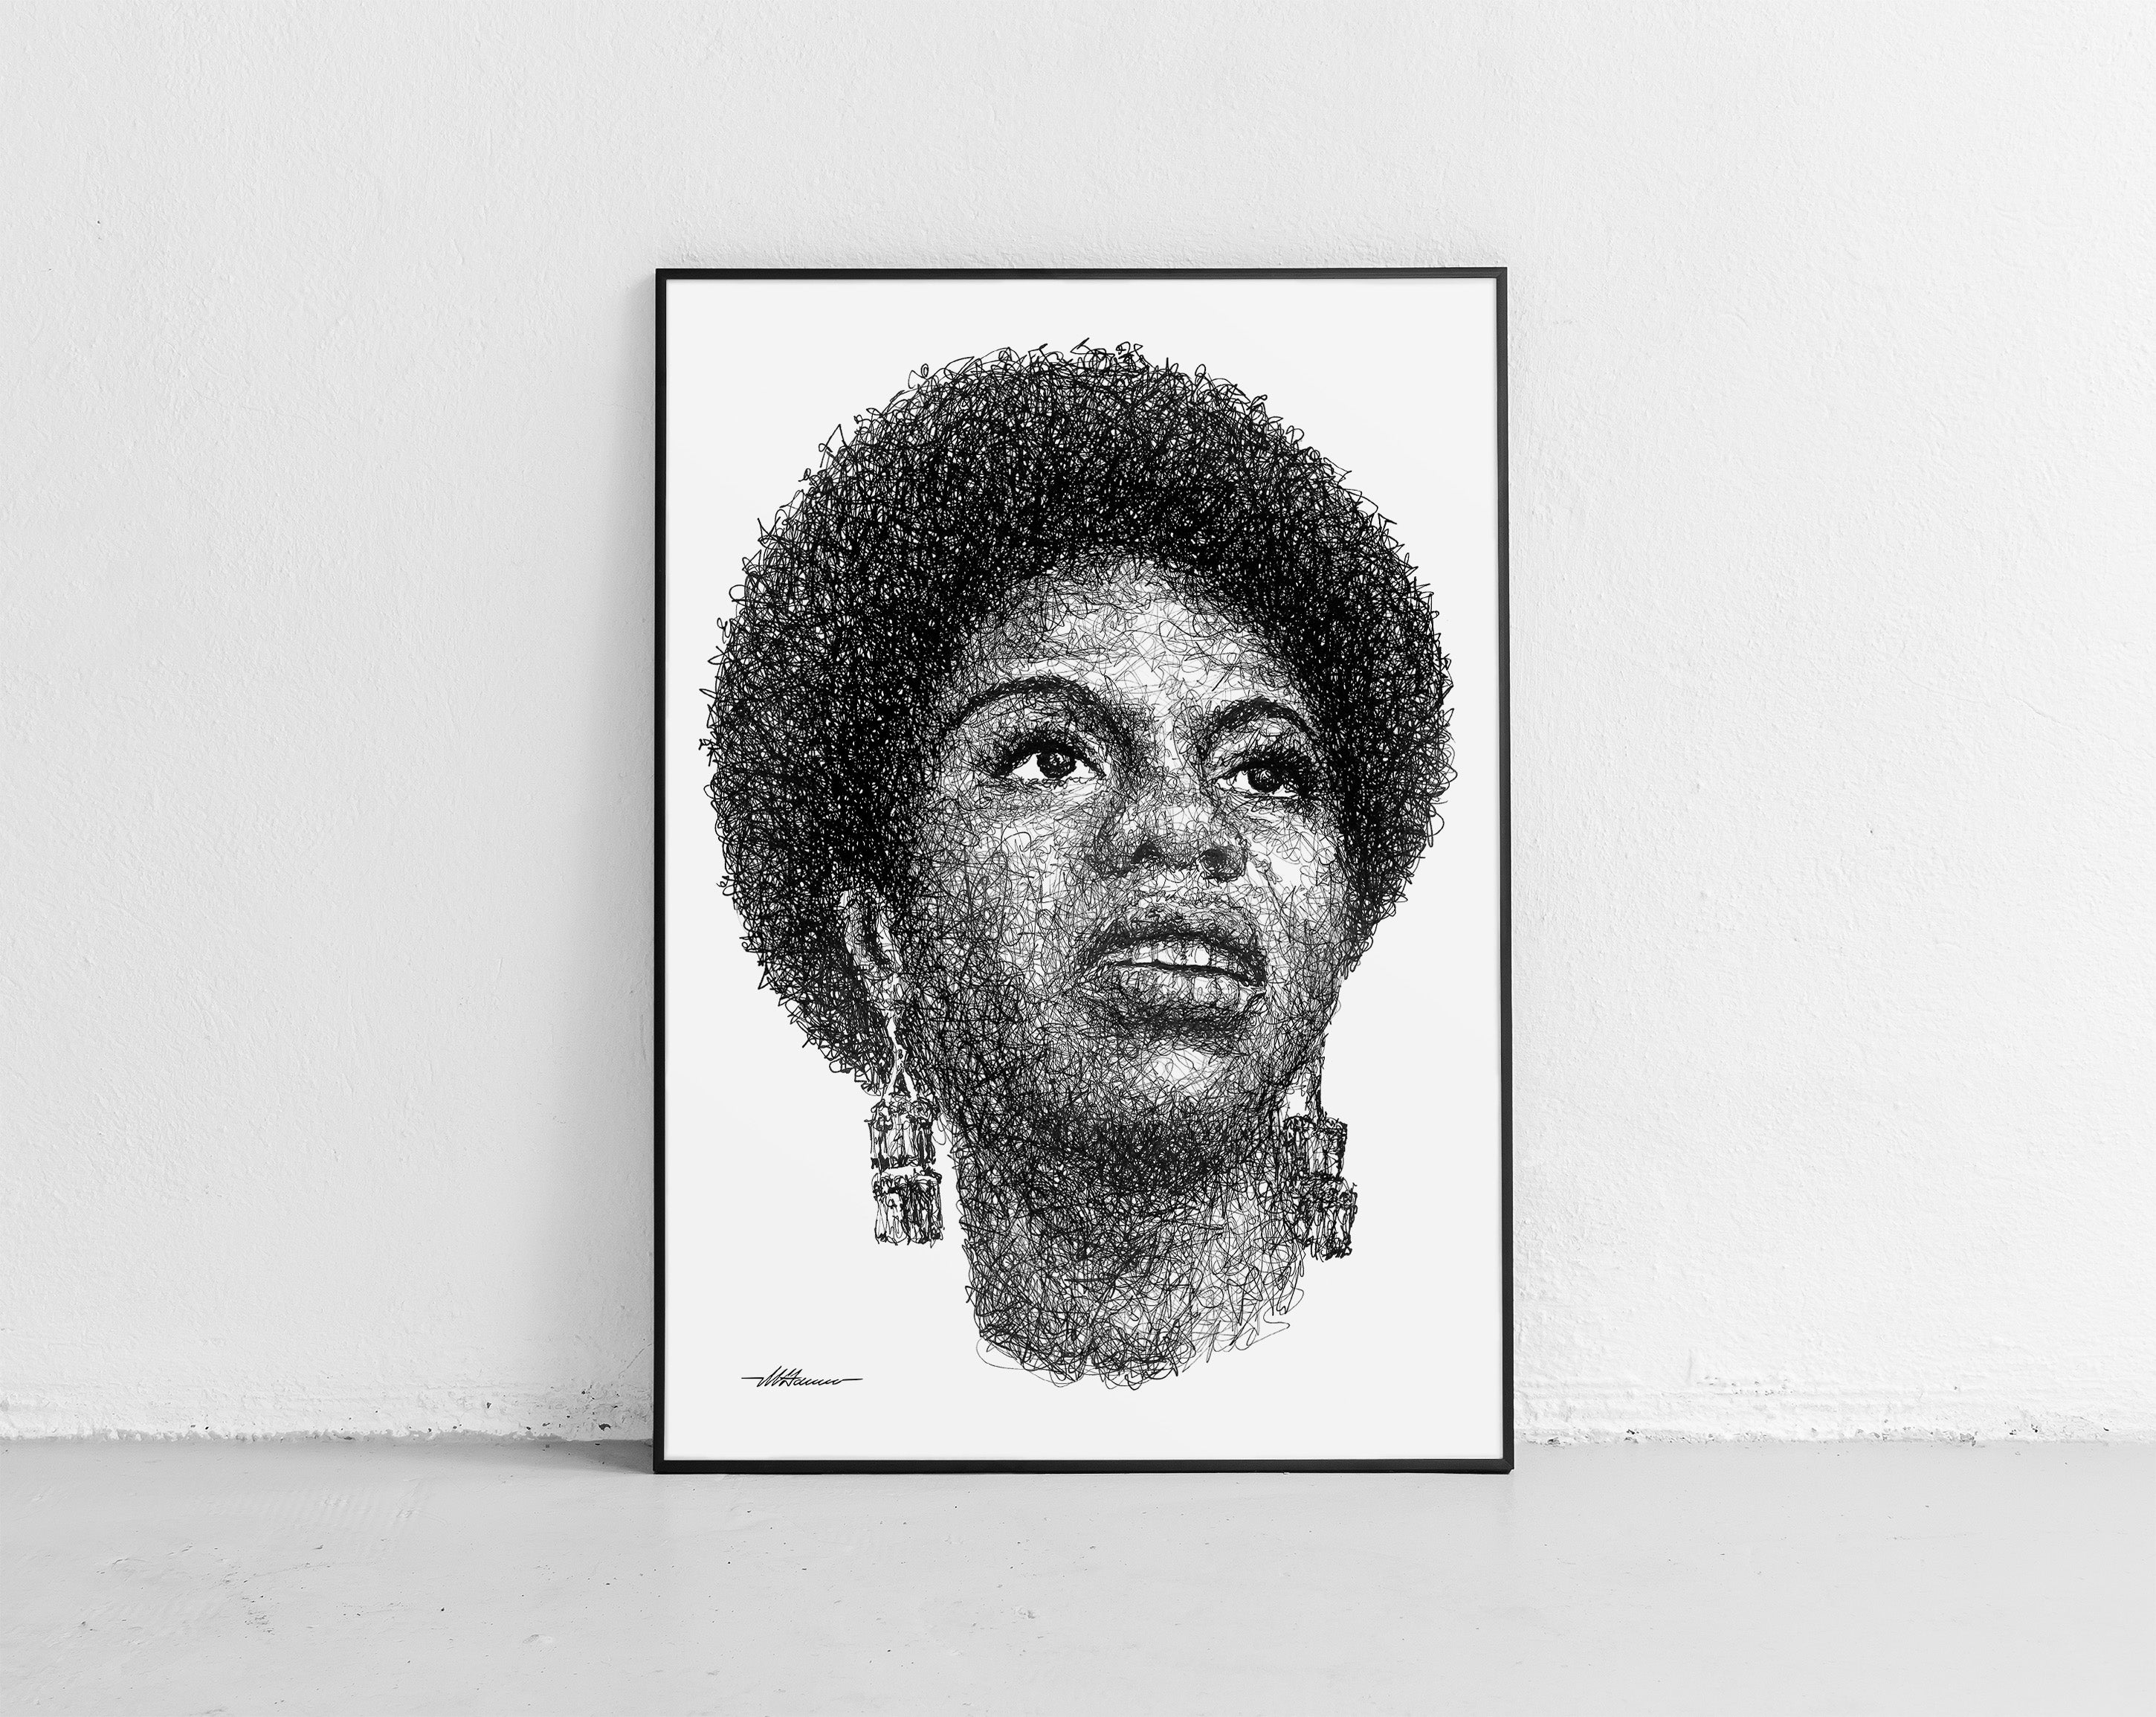 Nina Simone Portrait der Künstlerin Marilena Hamm alias Scribblezone, im unversechselbaren Scribble-Stil gezeichnet, gerahmt gegen die Wand lehnend.